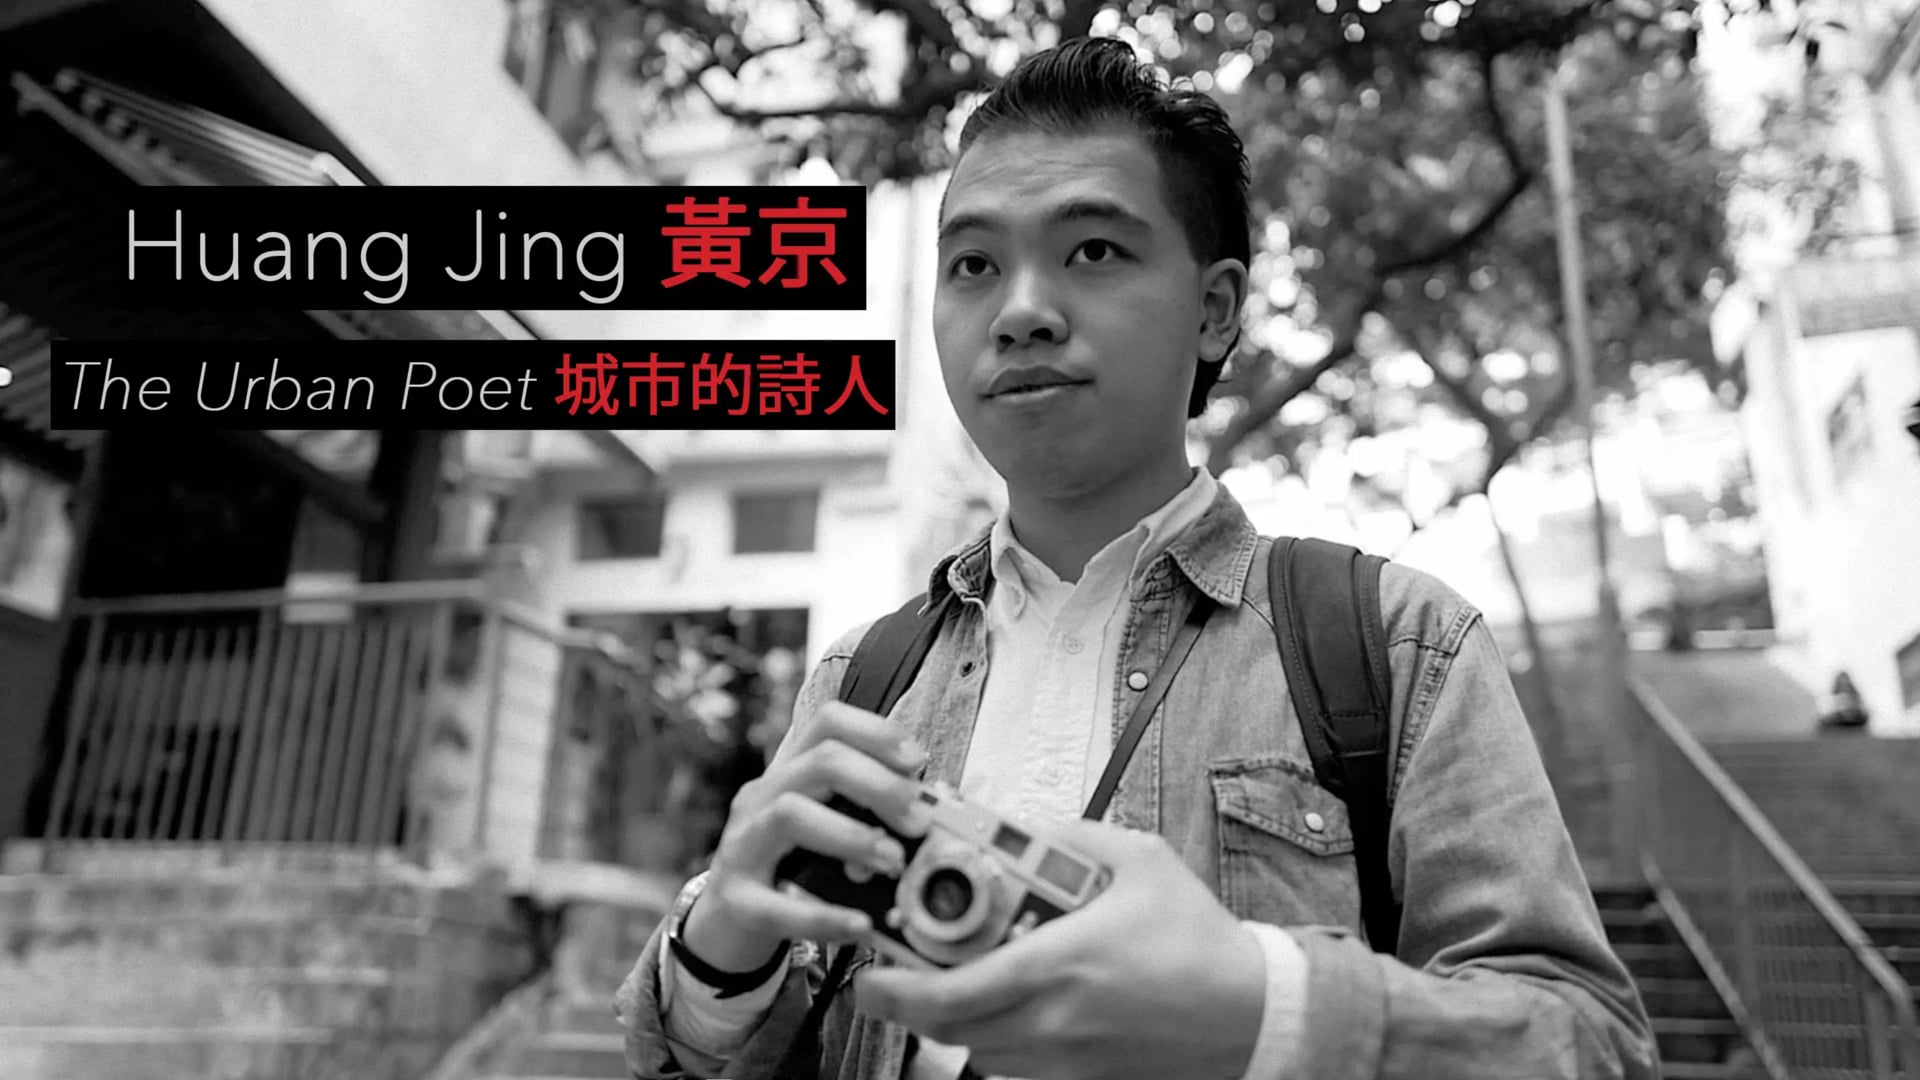 Huang Jing, The Urban Poet